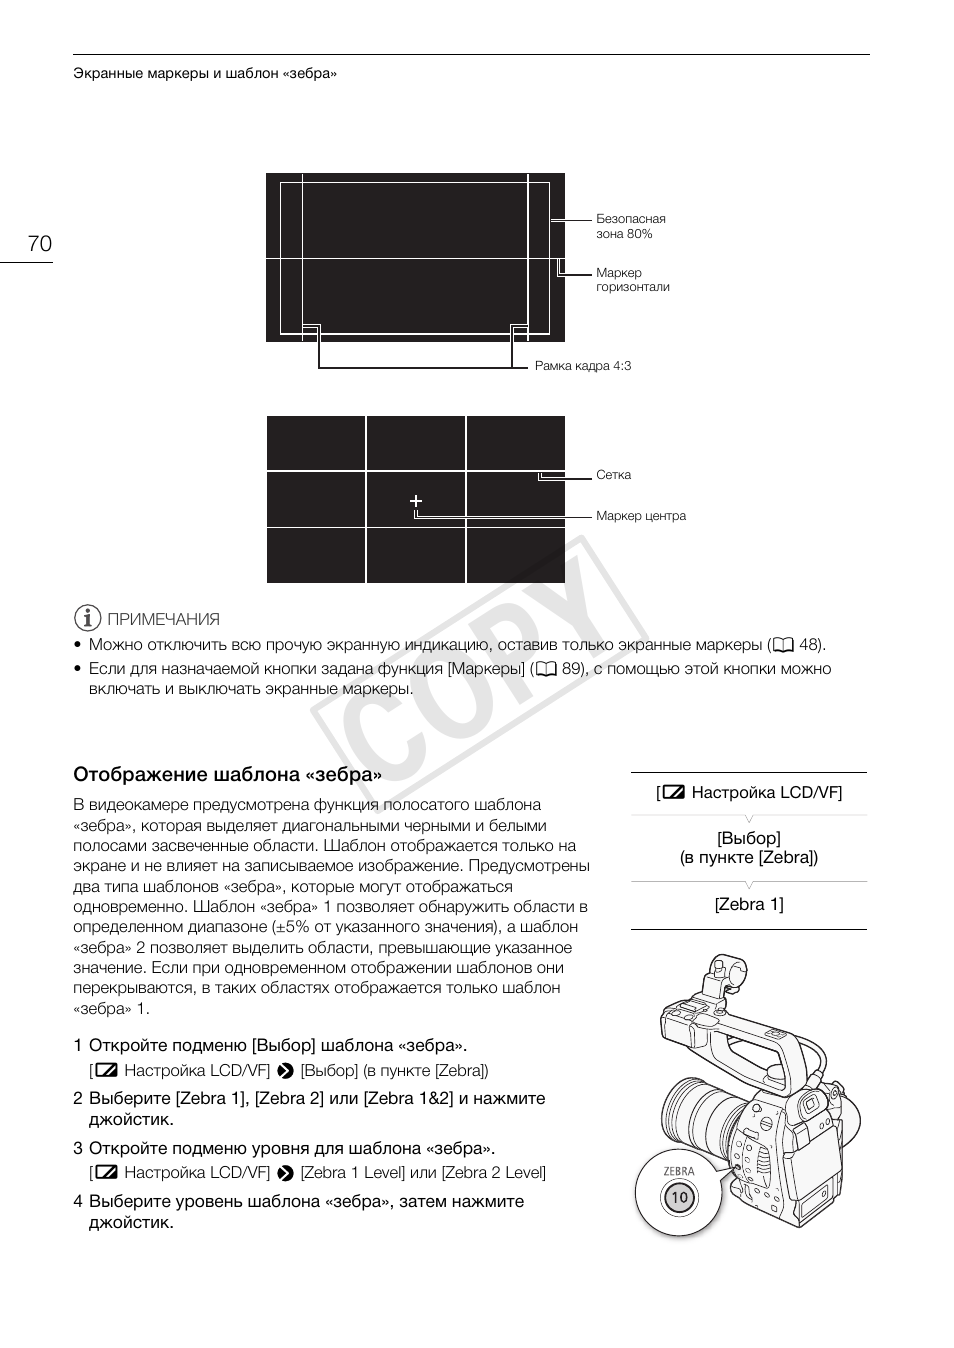 Отображение шаблона ≪зебра, Отображение шаблона «зебра» 70, Cop y | Инструкция по эксплуатации Canon EOS C100 | Страница 70 / 171